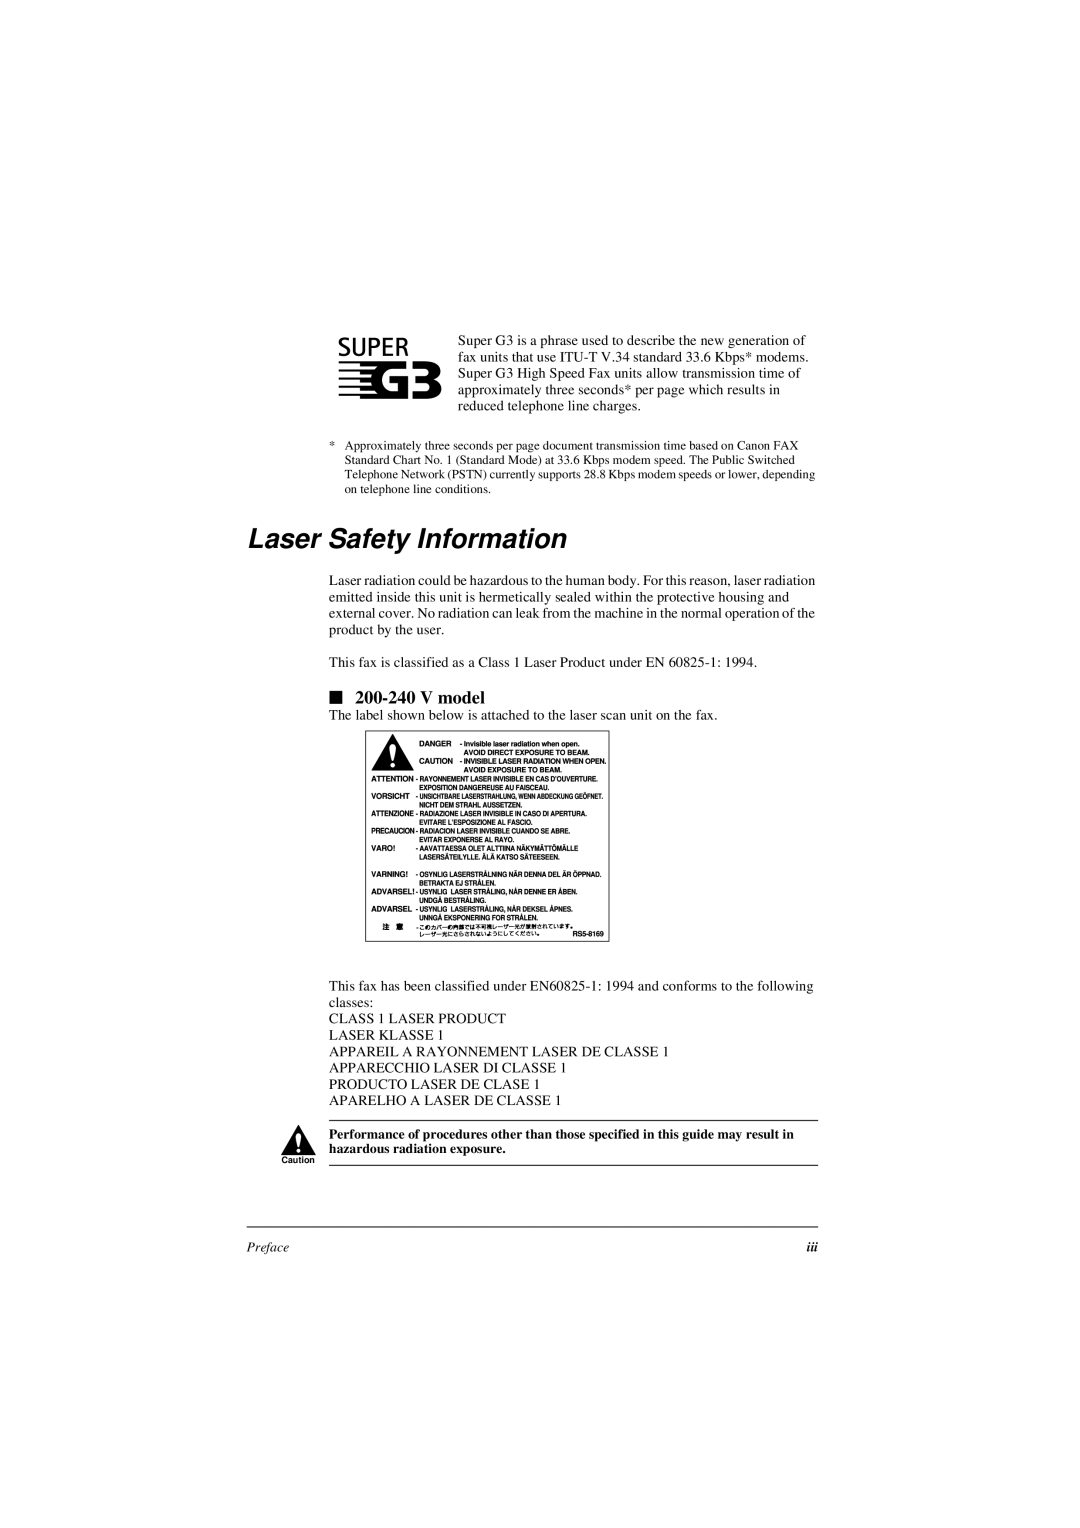 Canon L240, L290 manual Laser Safety Information, V model 